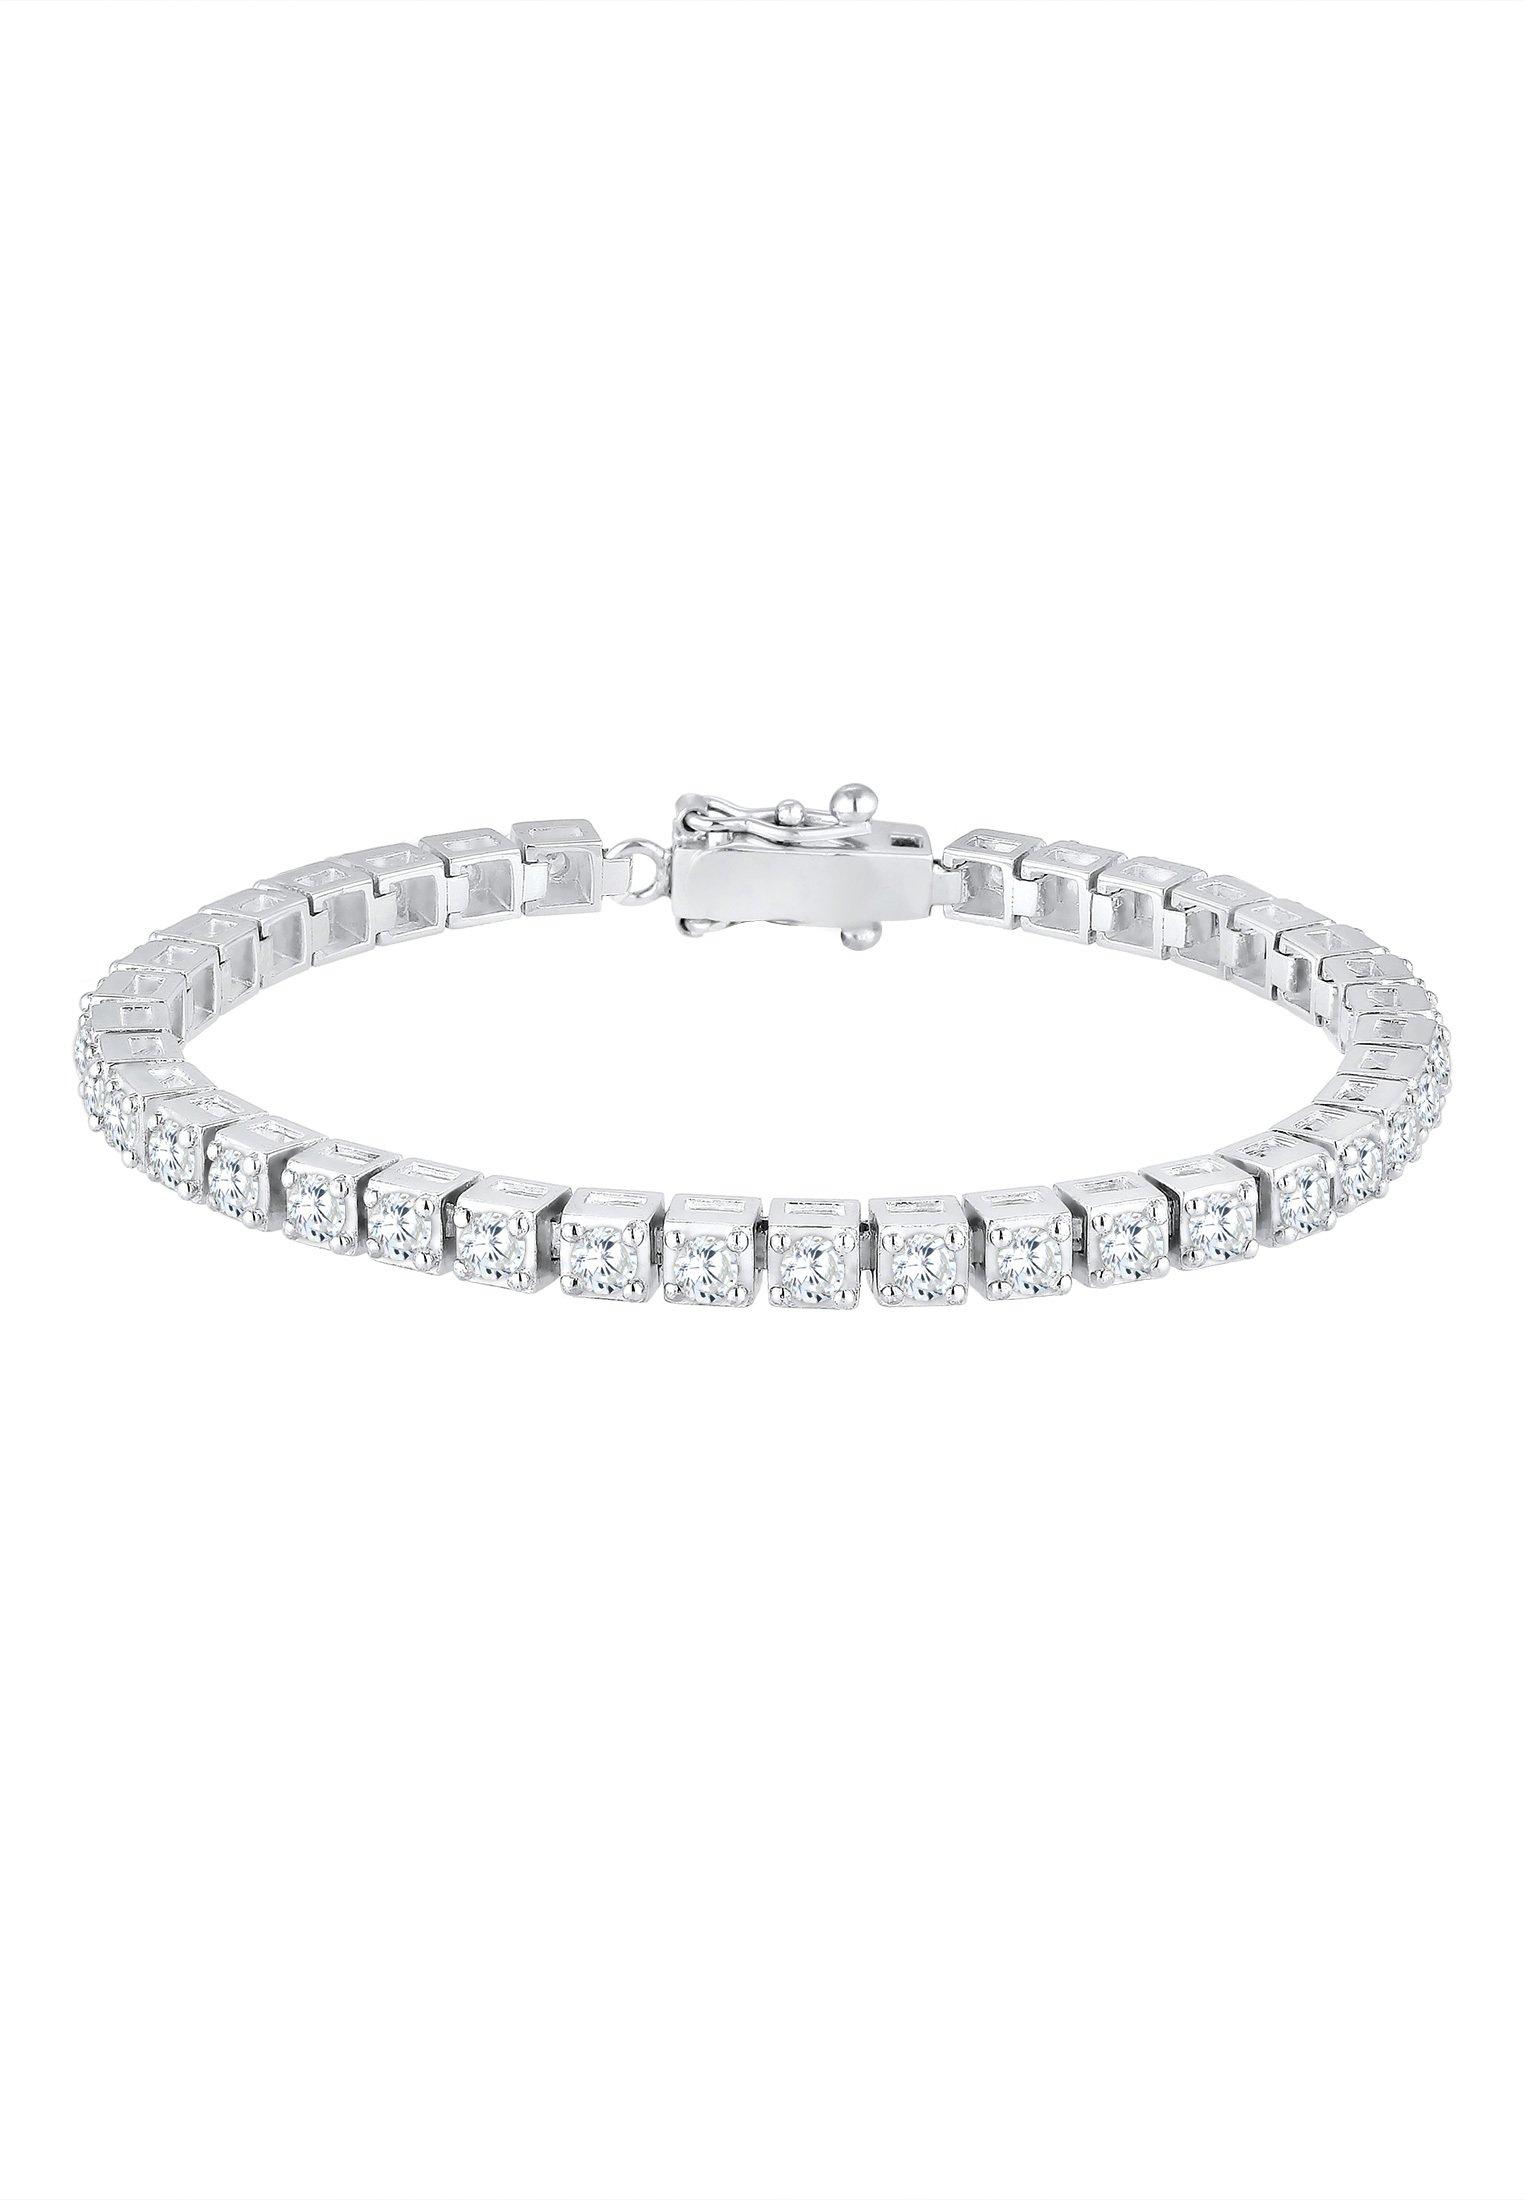 Armband Tennisarmband Trend Zirkonia Kristalle Damen Silber 20cm von Elli